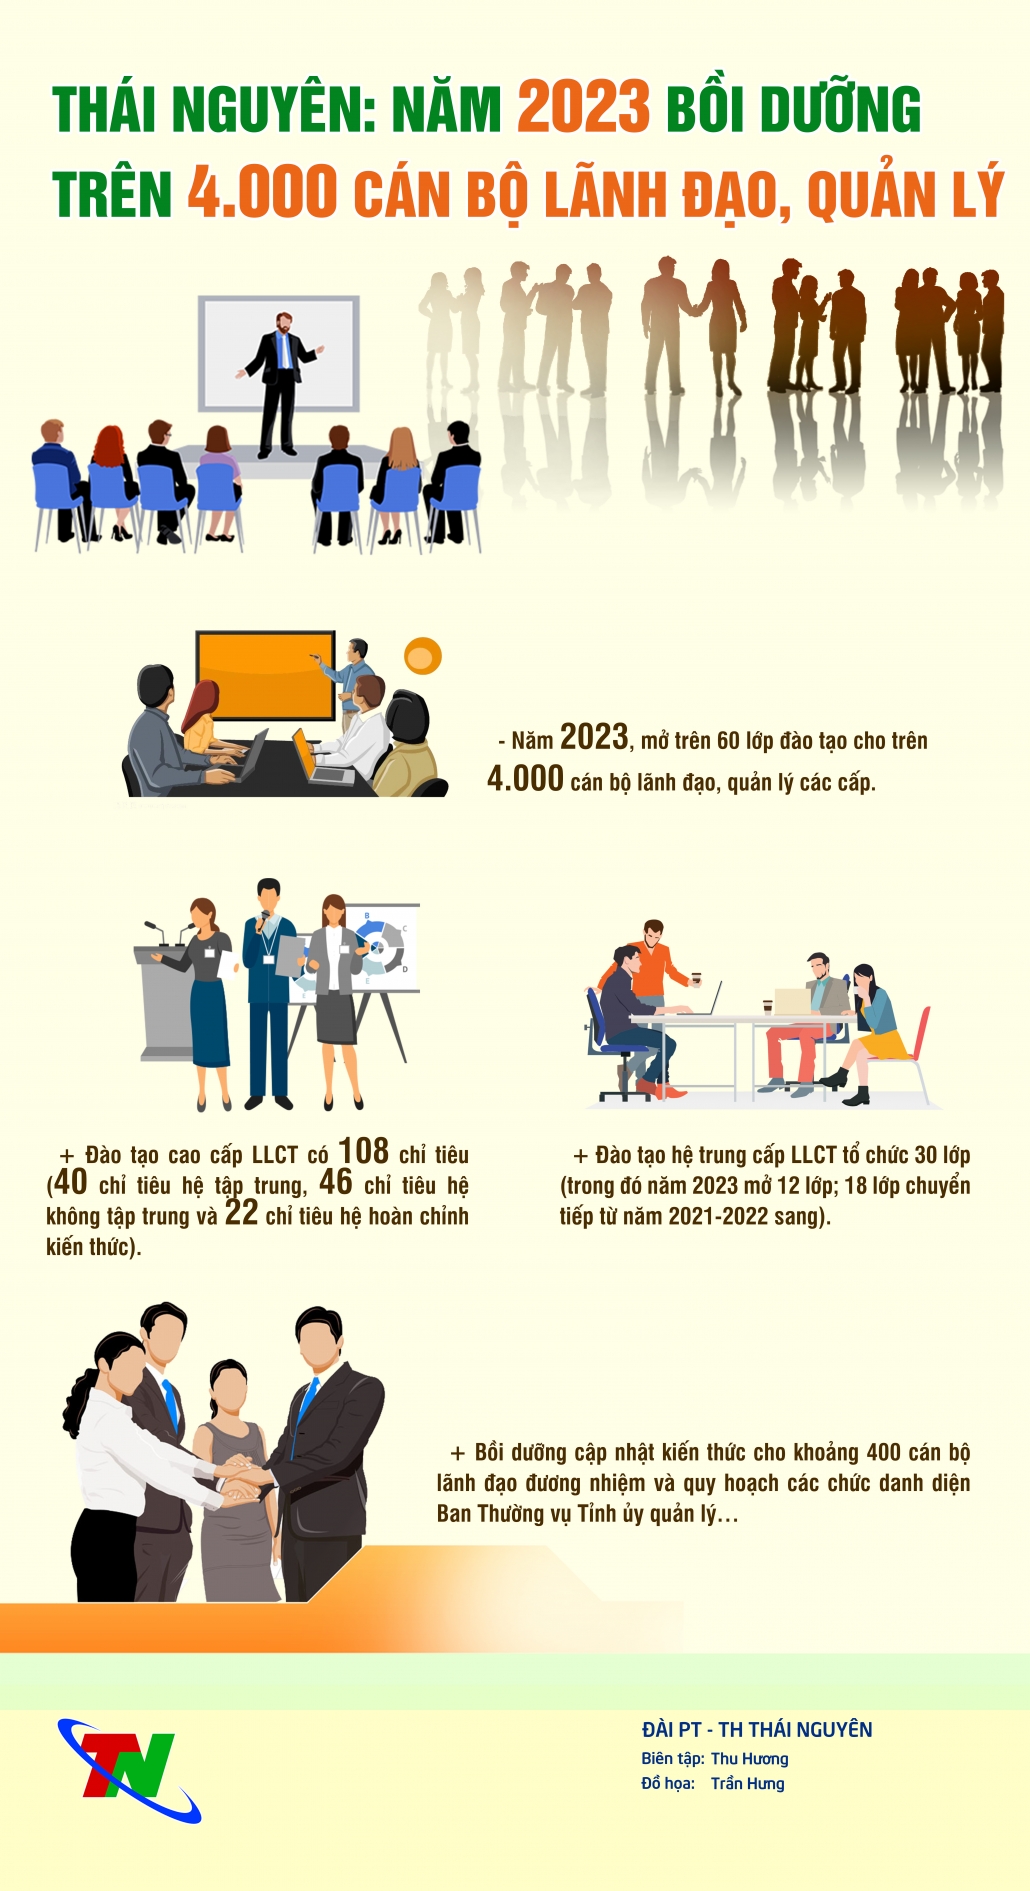 [Infographics] Thái Nguyên: Năm 2023 bồi dưỡng trên 4.000 cán bộ lãnh đạo, quản lý